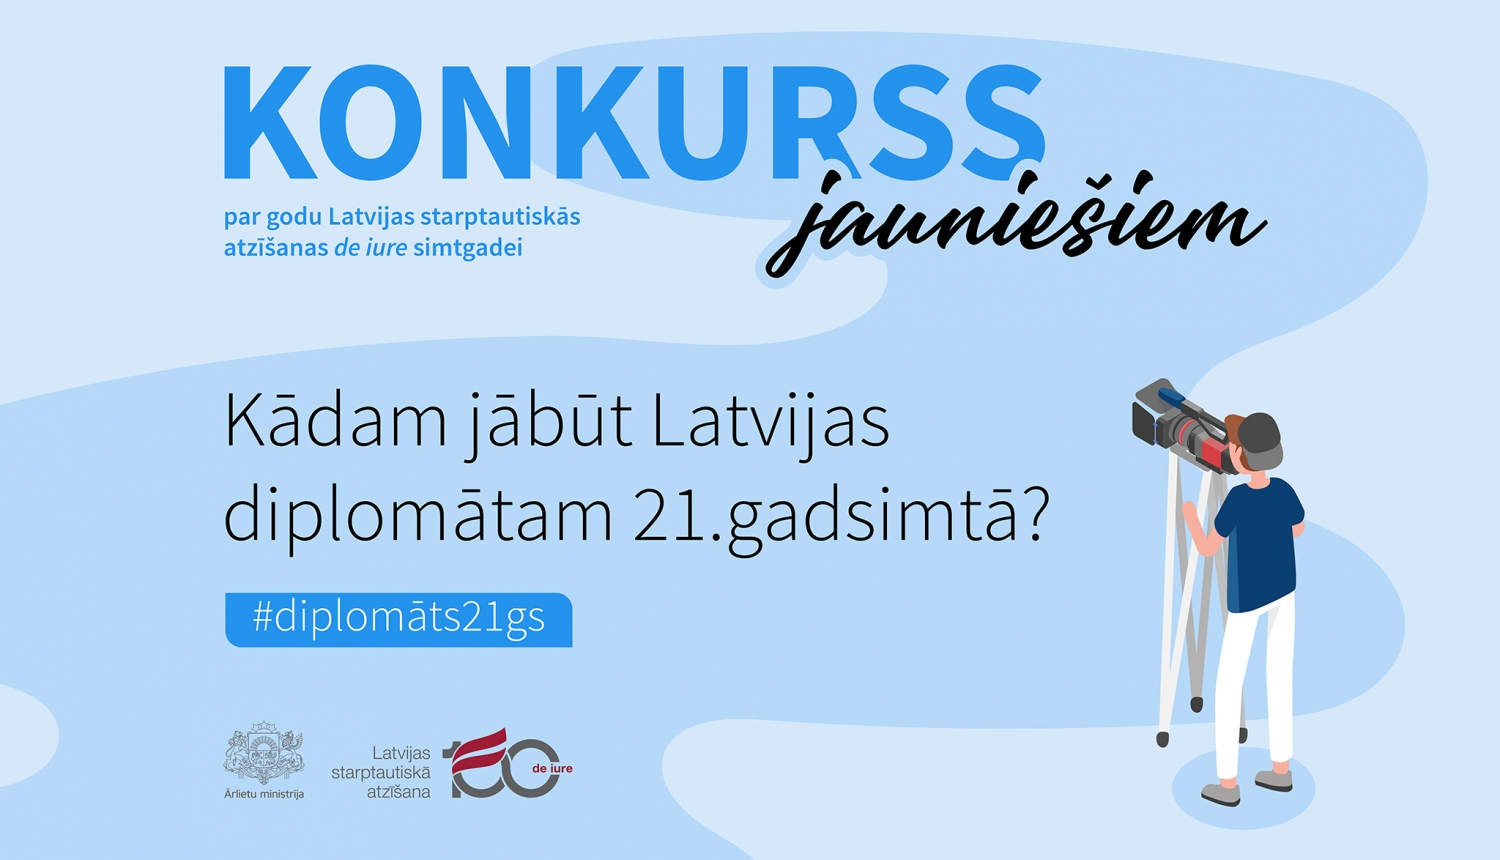 Ārlietu ministrija izsludina Latvijas starptautiskās atzīšanas "de iure" simtgadei veltītu konkursu jauniešiem